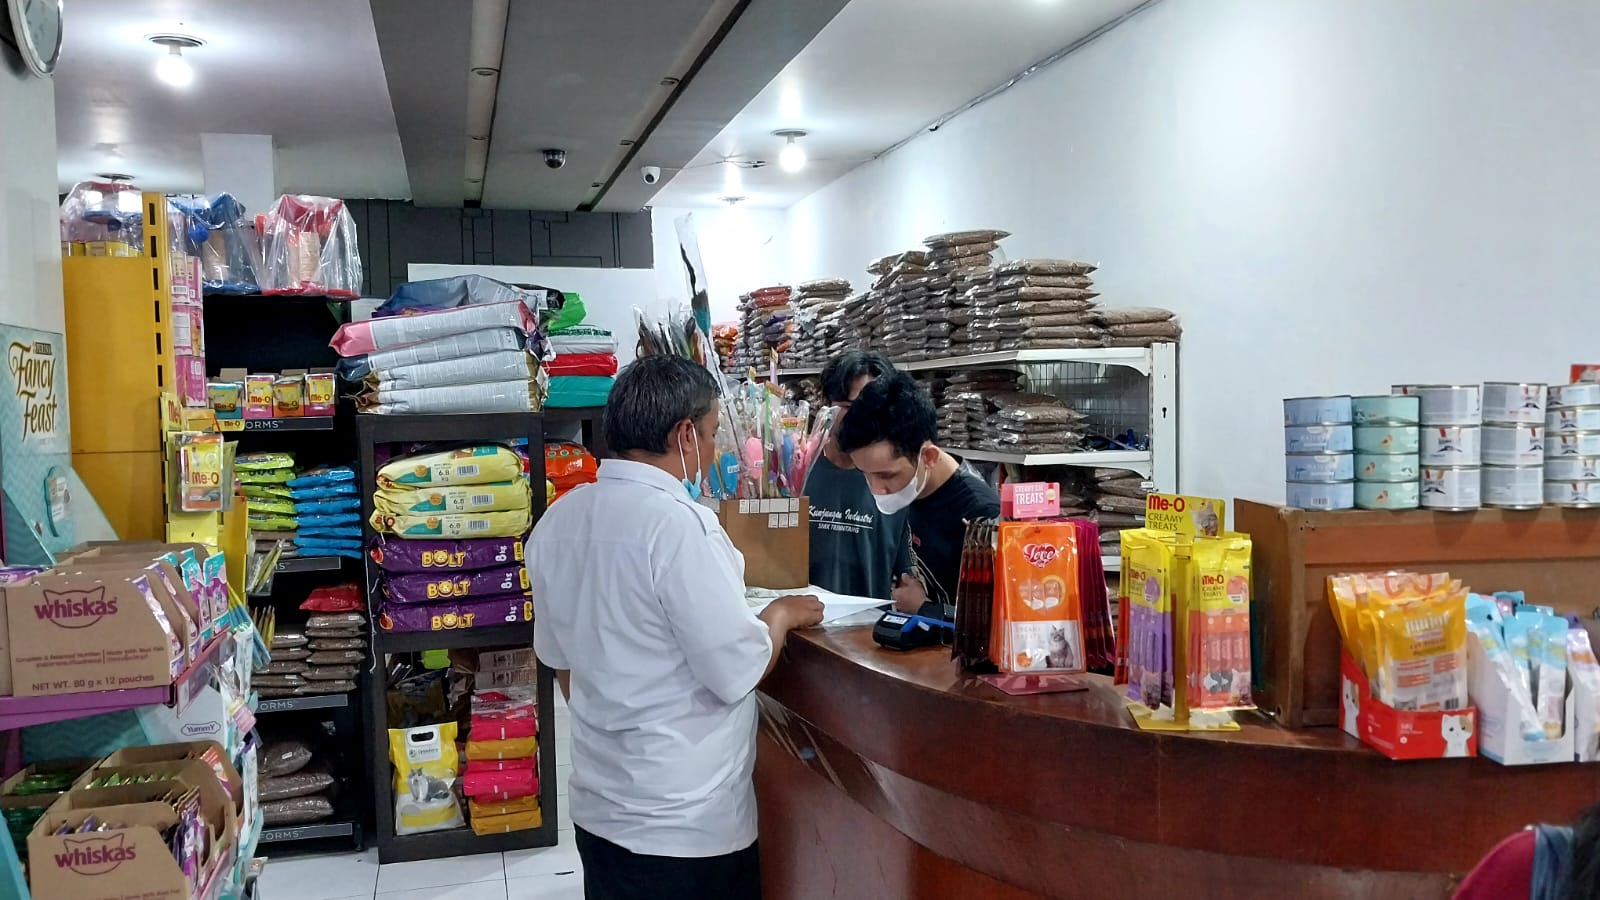 Petugas dari Bappenda Cimahi mendatangi salah satu toko yang menunggak pembayaran pajak Reklame belum lama ini.